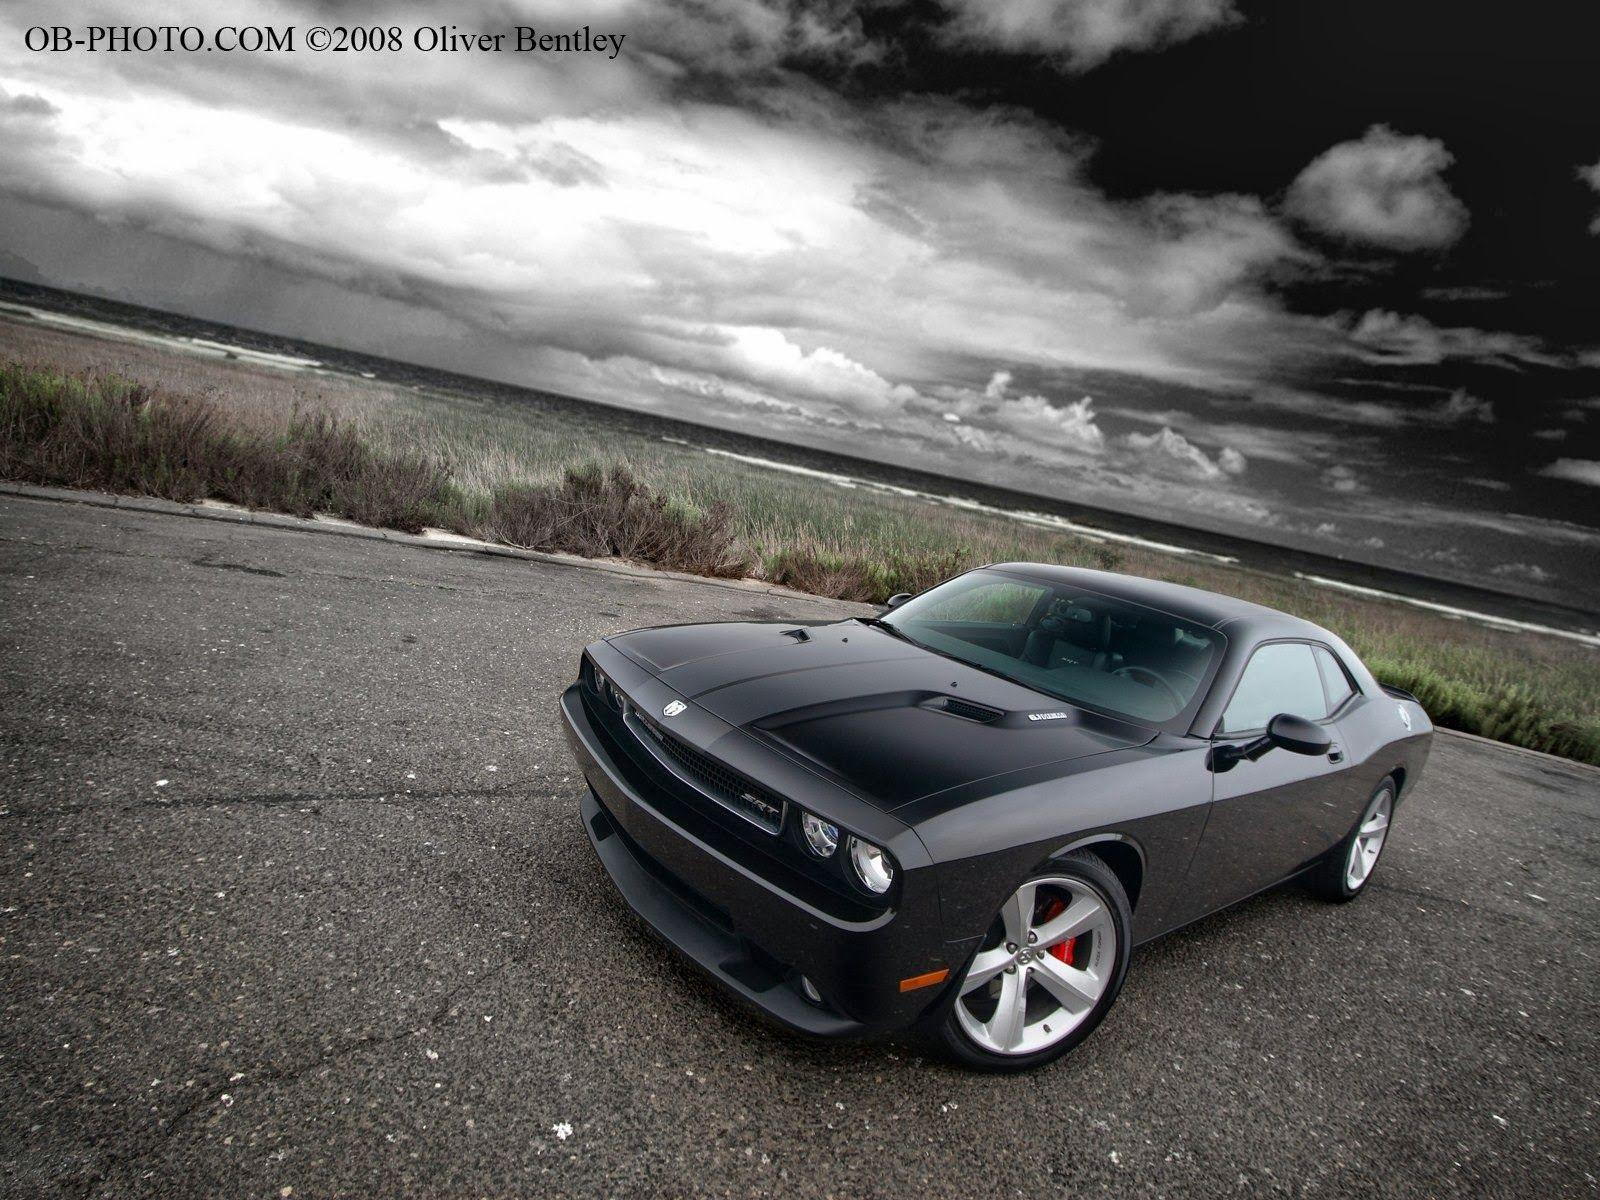 Dodge Challenger Car Image HD